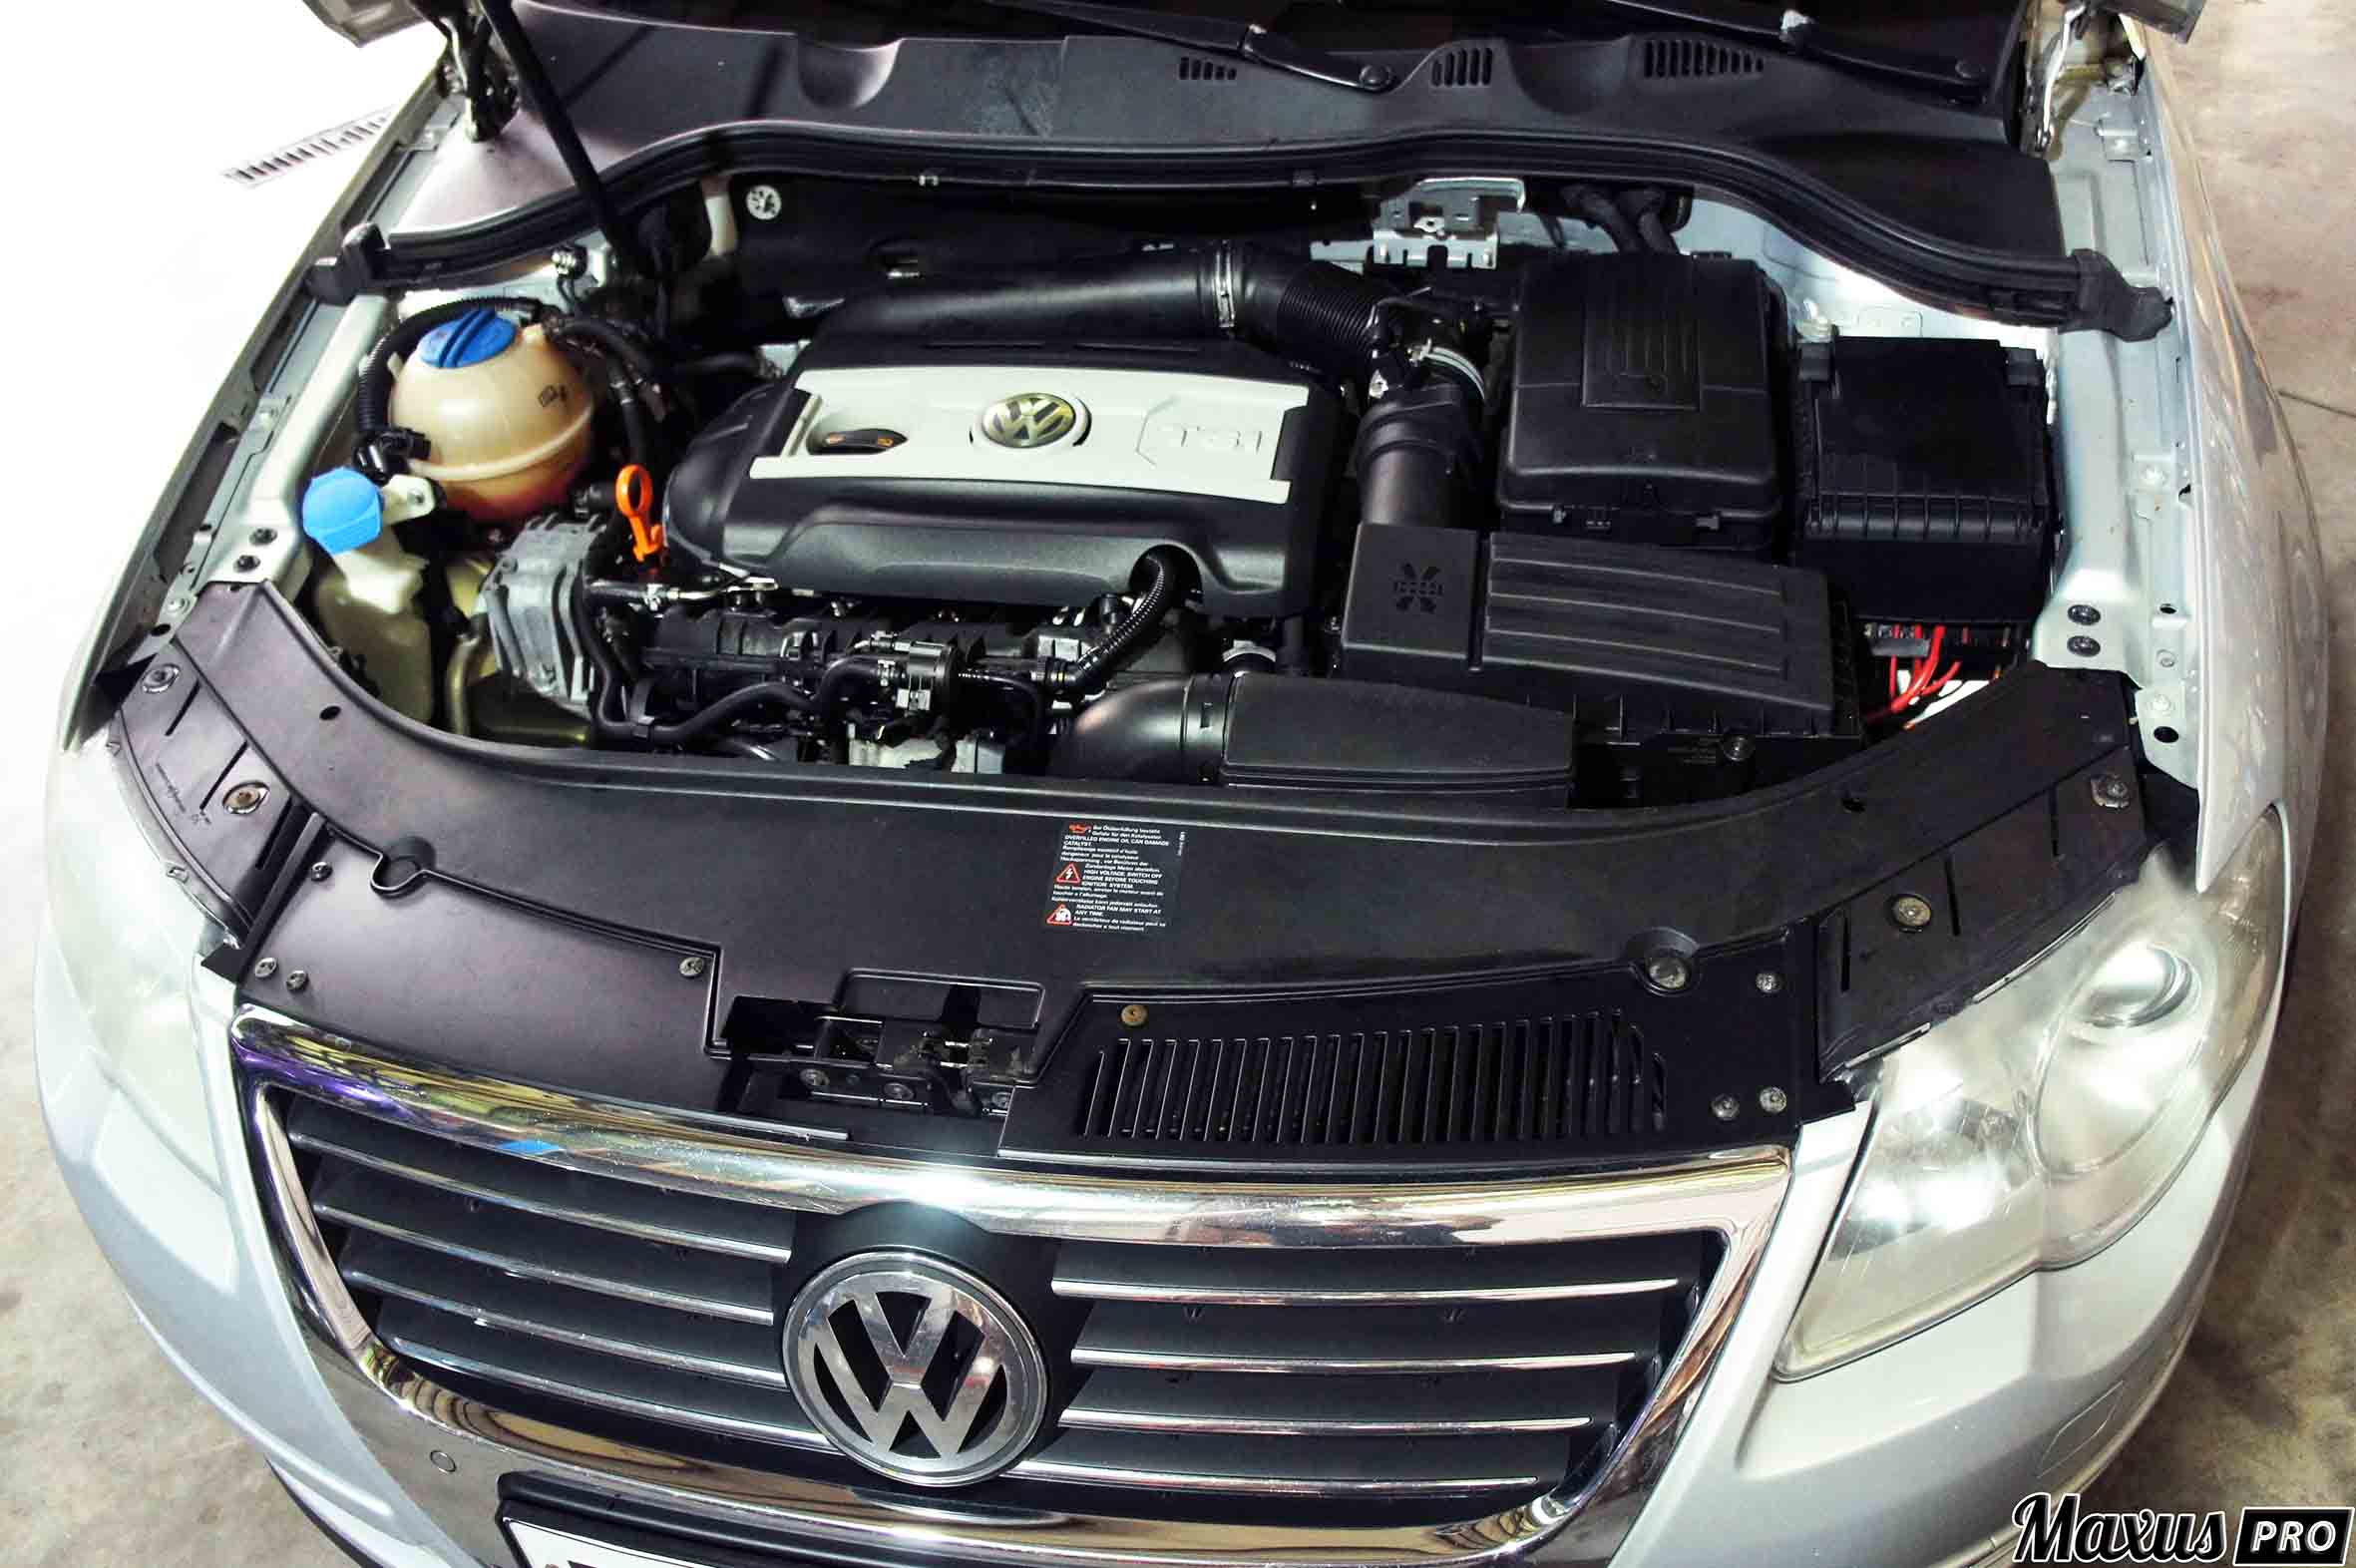 Ремонт двигателя Volkswagen Passat Киев - цены, капитальный ремонт двигателя Фольксваген Пассат